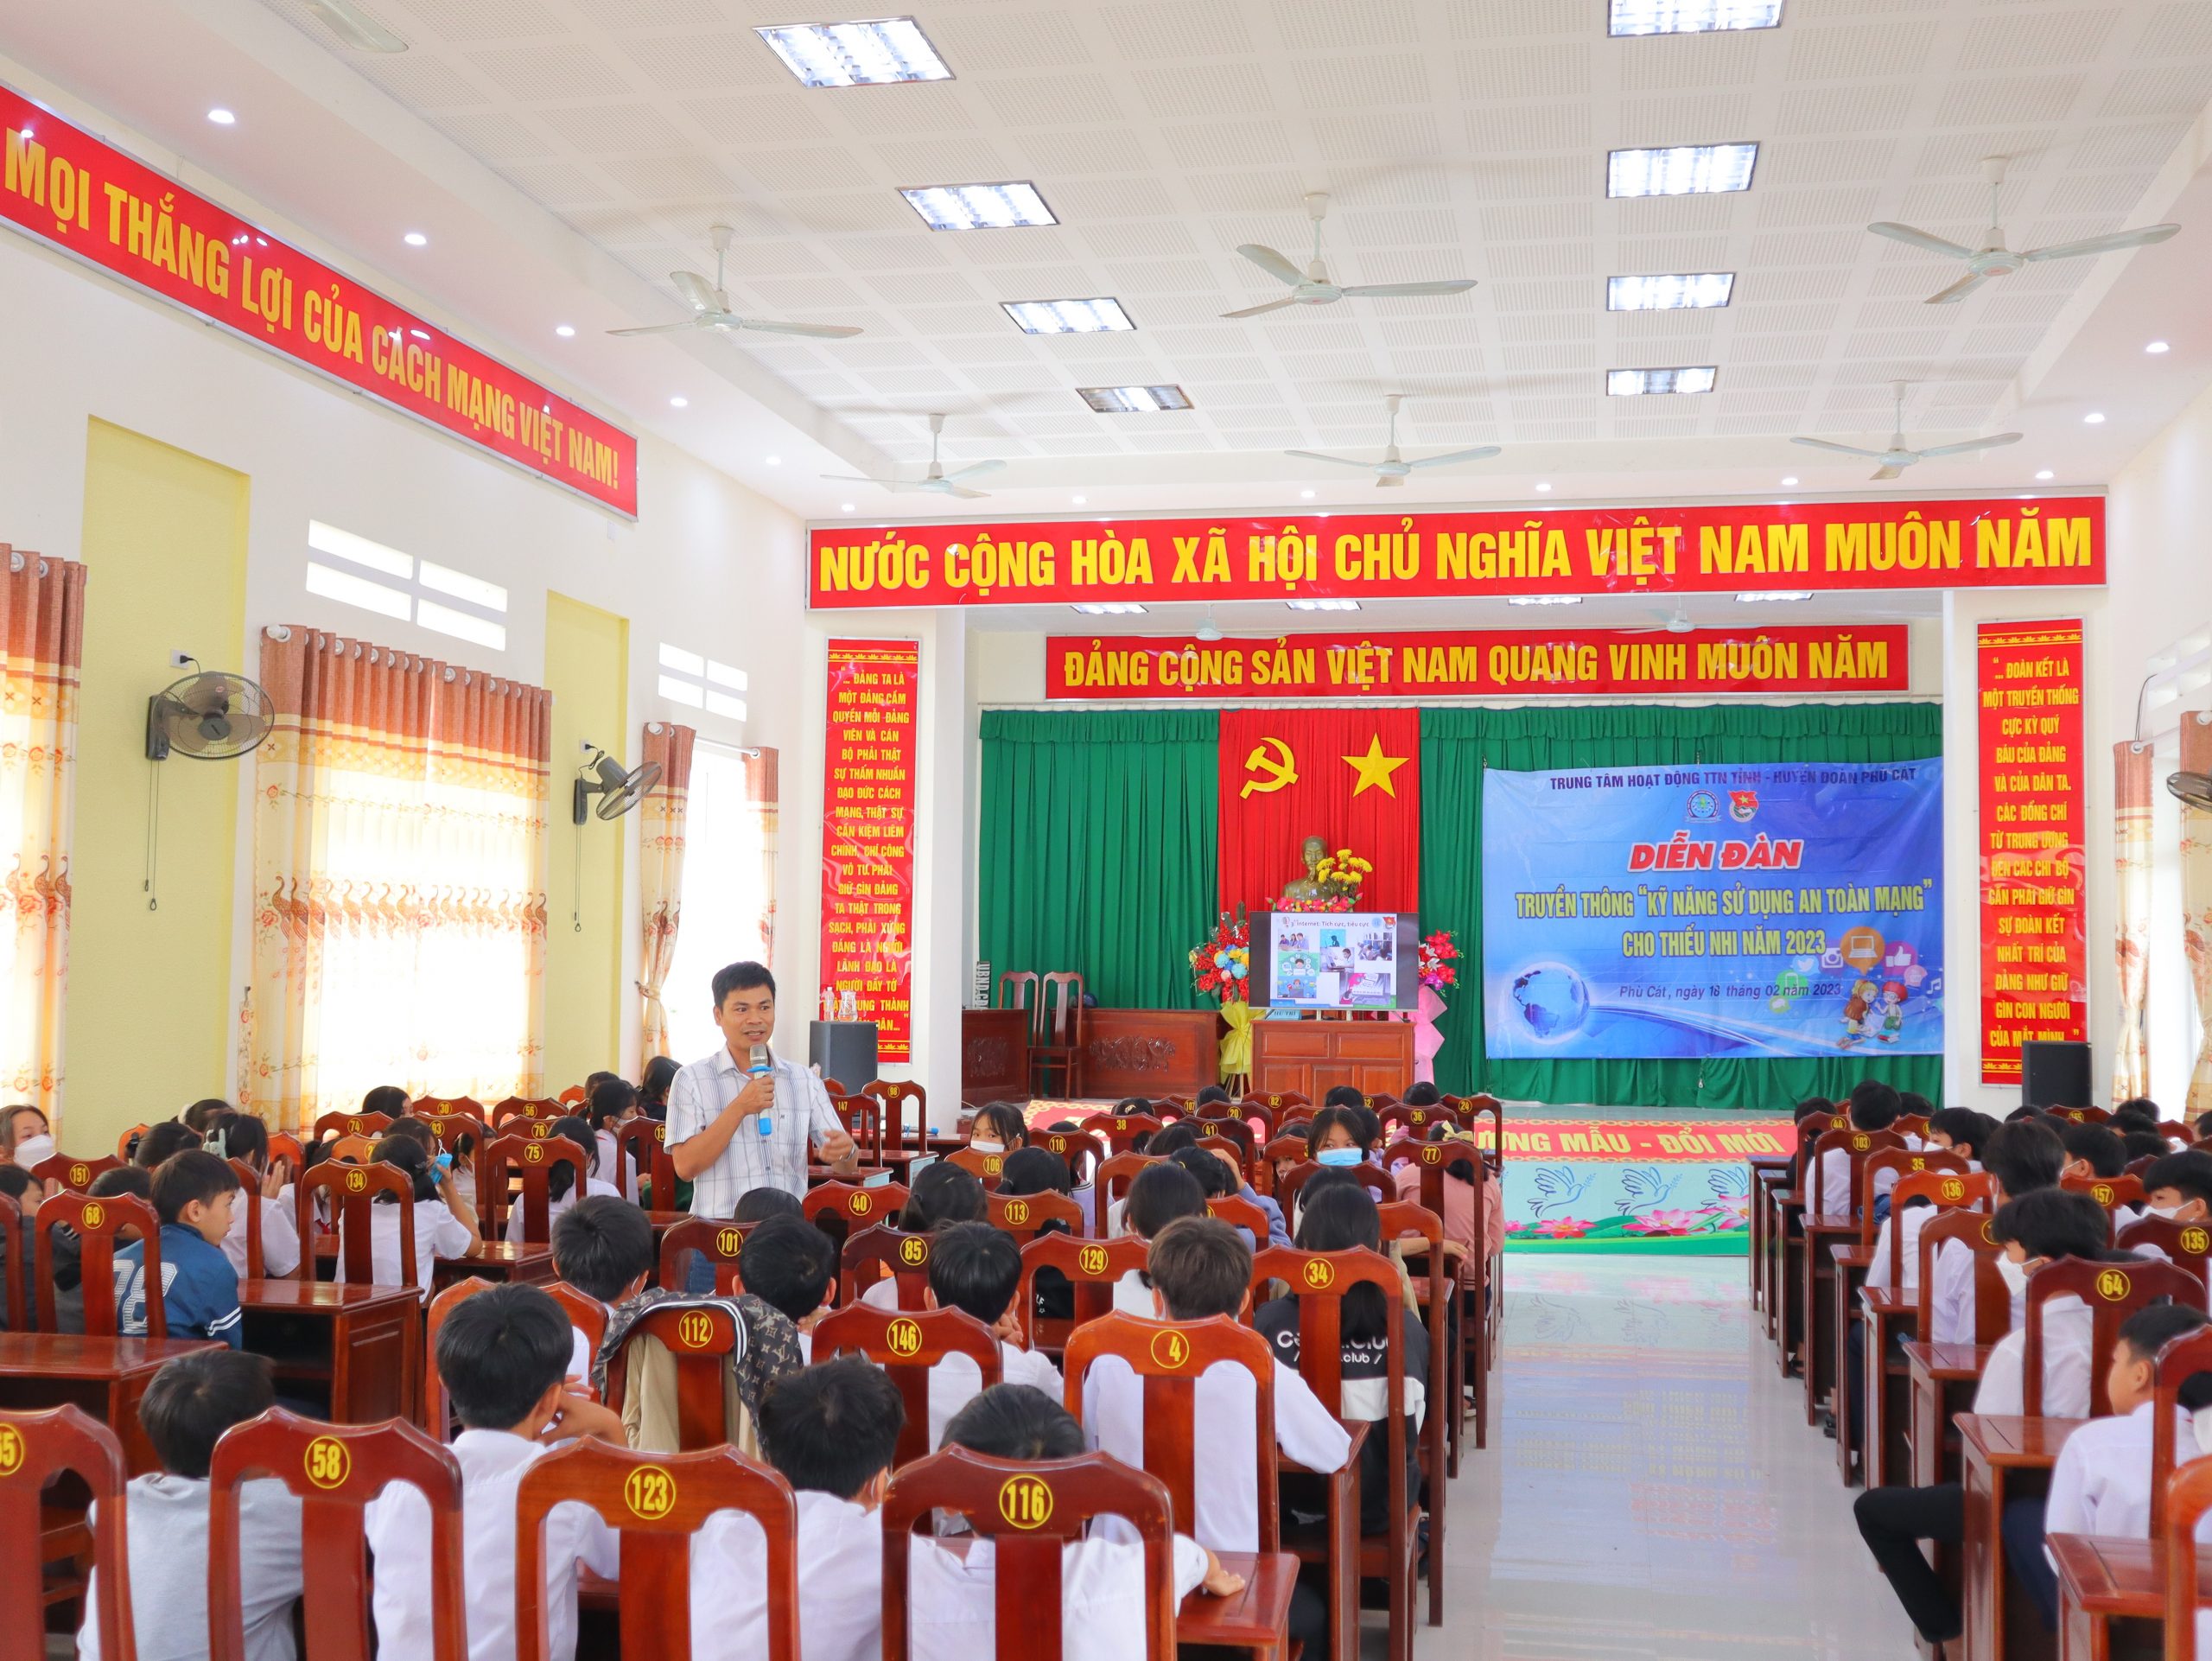 Tổ chức diễn đàn truyền thông “Kỹ năng sử dụng an toàn mạng” cho thiếu nhi năm 2023 tại trường THCS Cát Minh, Cát Sơn huyện Phù Cát và trường THCS Ngô Văn Sở, Ngô Mây tp. Quy Nhơn.